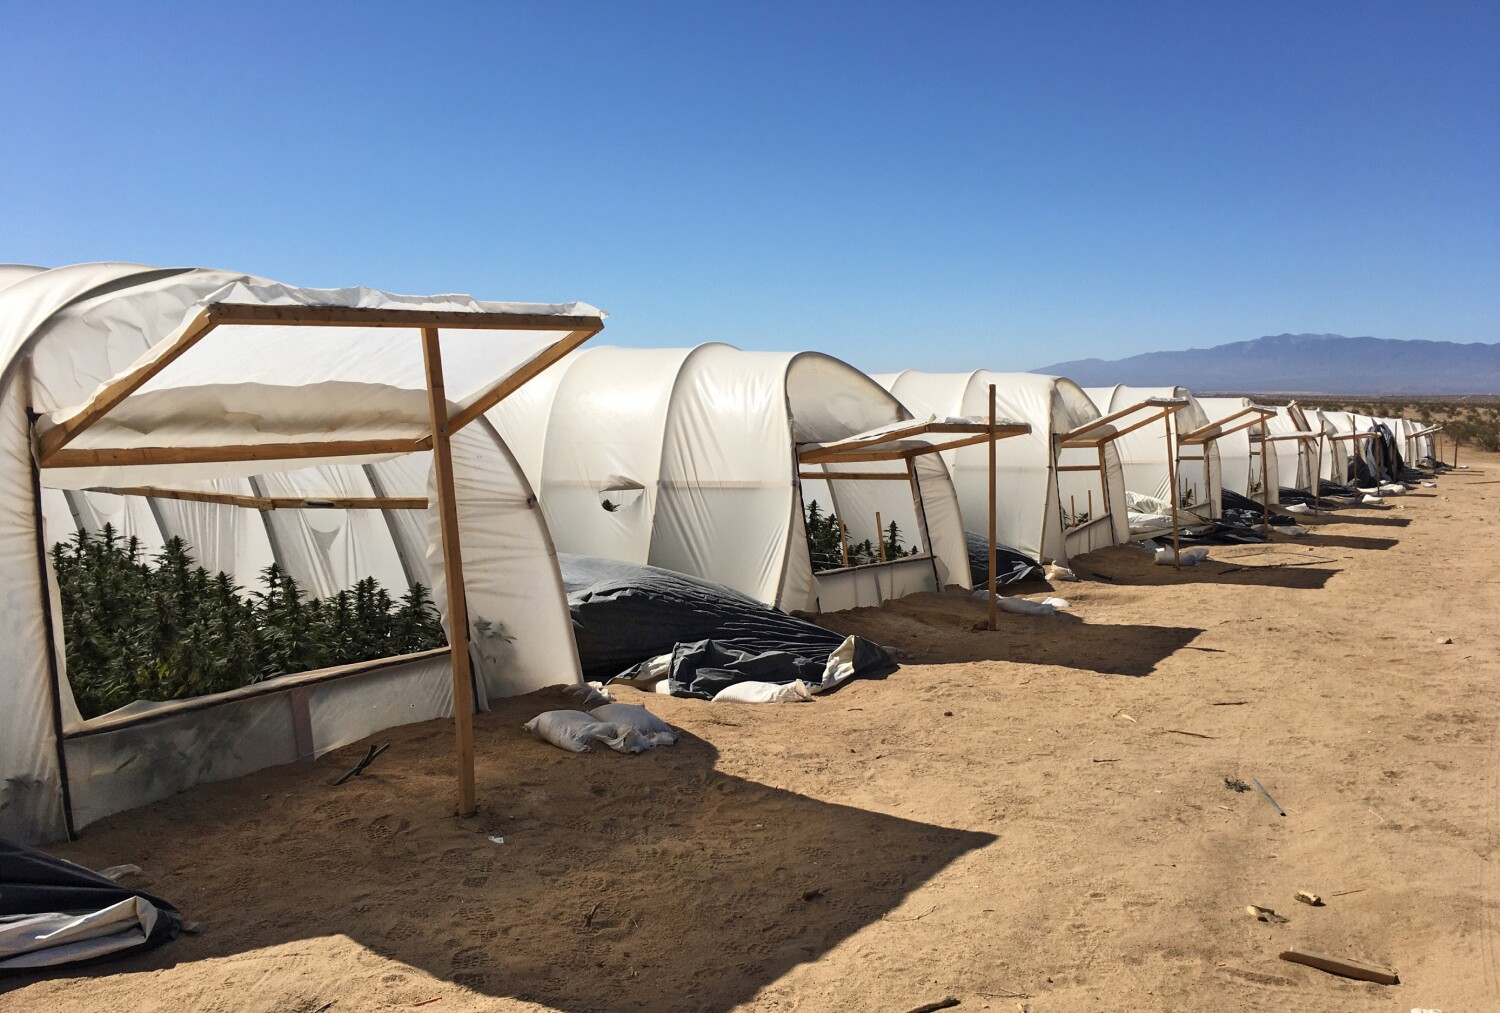 As illegal marijuana farms invade desert communities, officials reconsider cannabis regulations